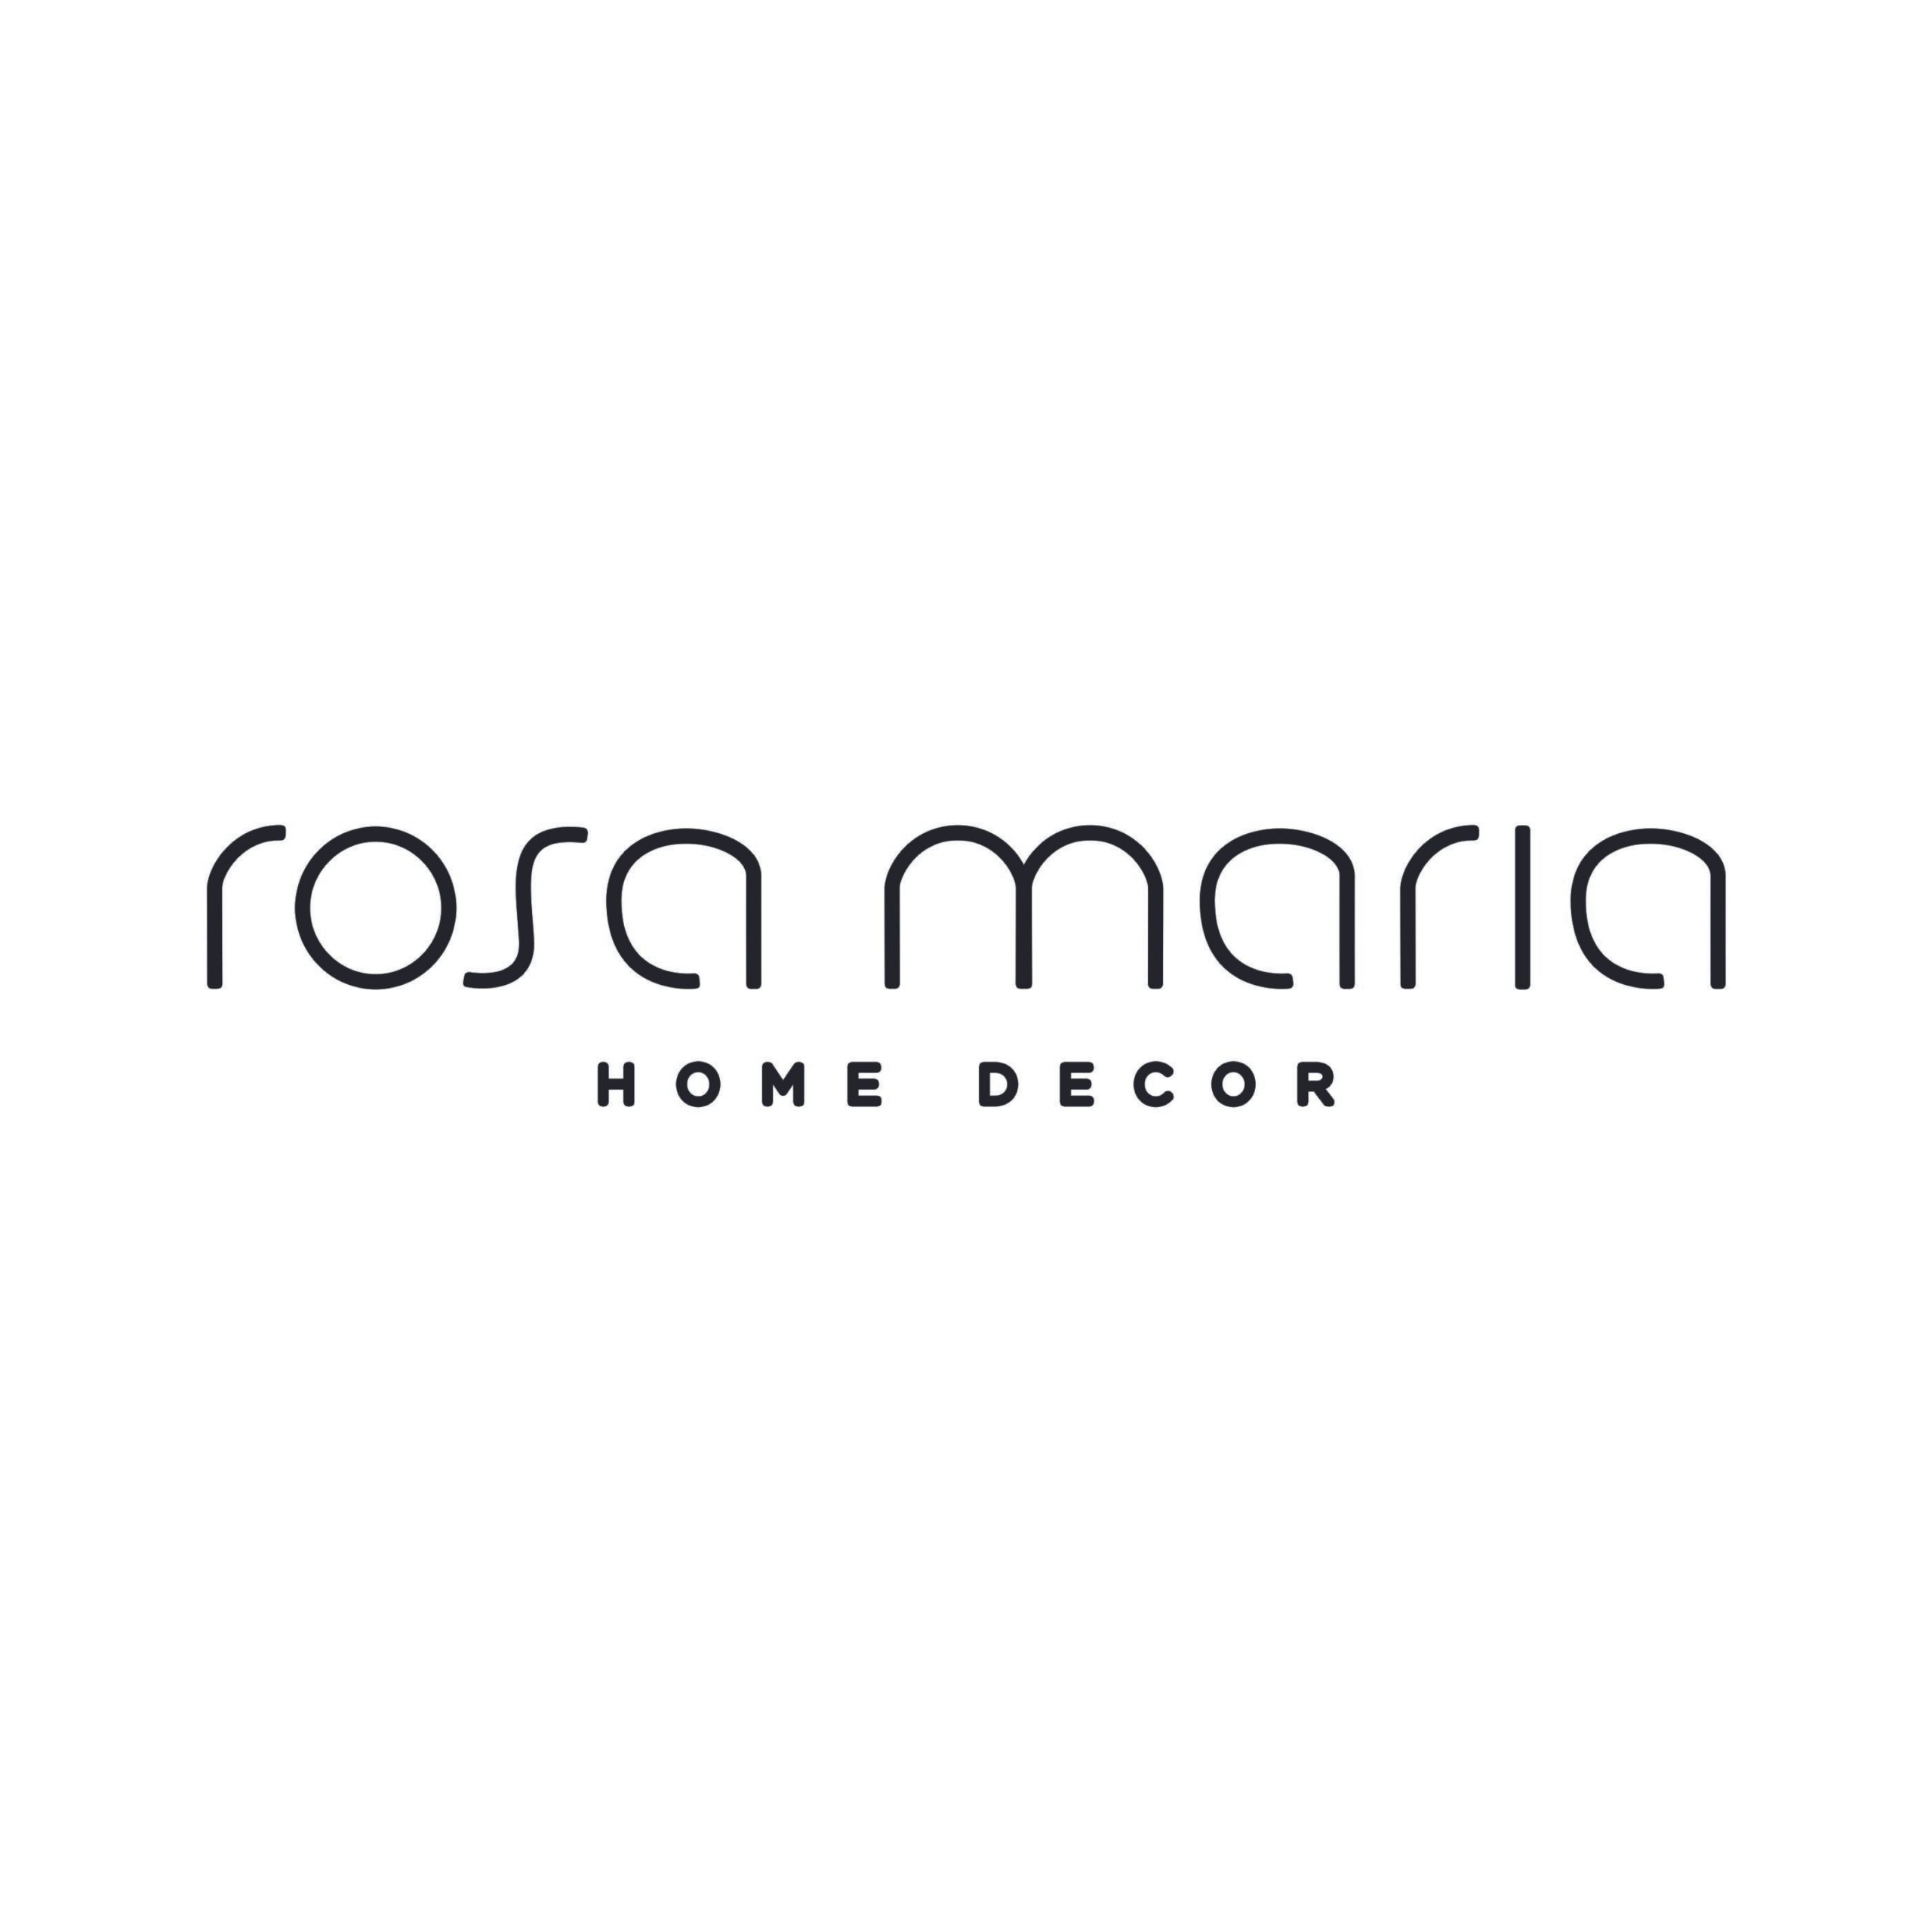 ROSA MARIA HOME DECOR – MAIS ABUP